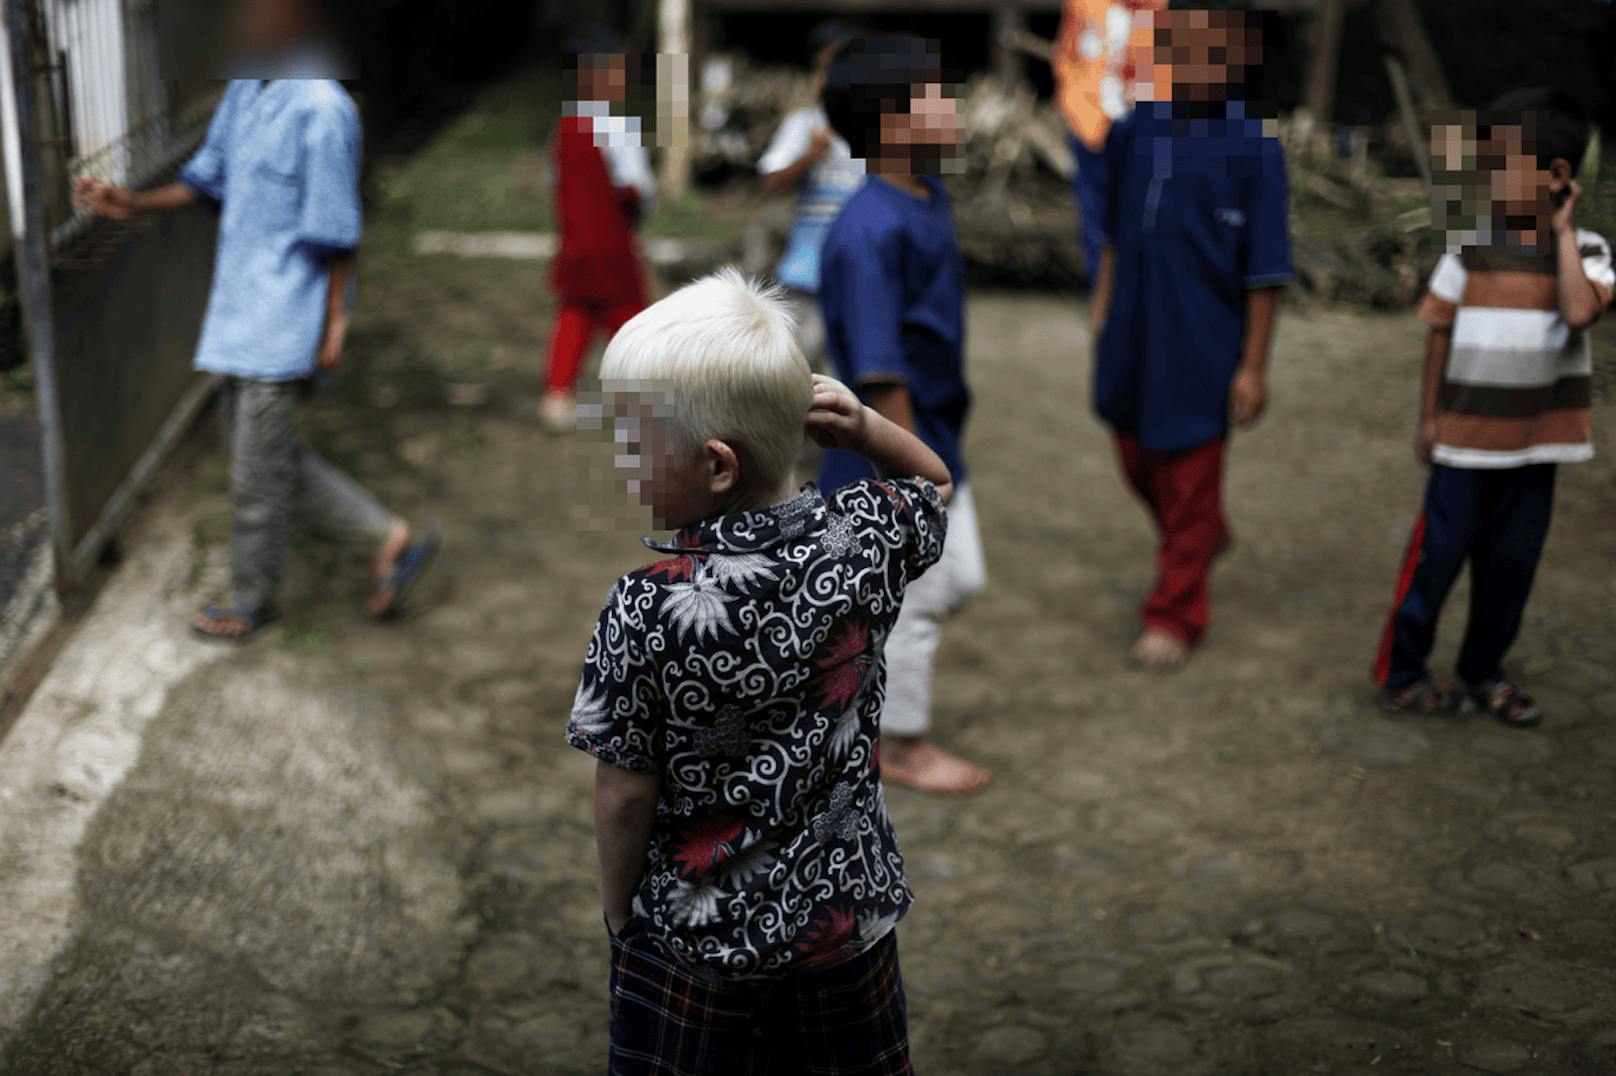 18 Tote nach Protesten rund um Albino-Kindesentführung